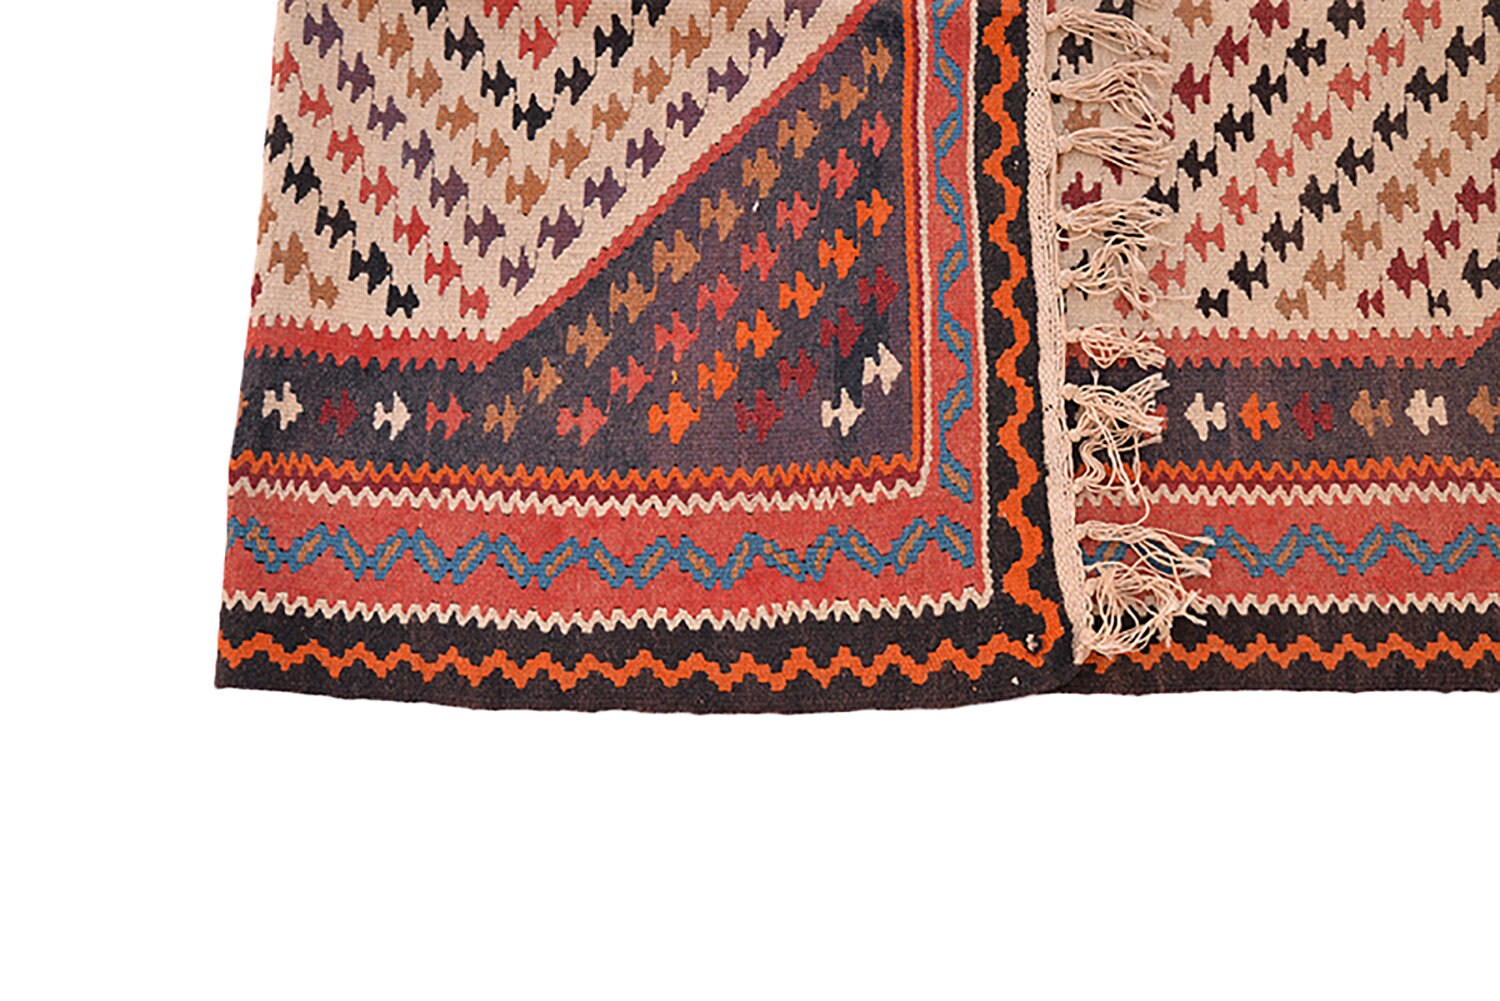 Vintage Turkish 3x6 Runner Rug | Chevron Design Red and Orange |  Wool Tribal Flatweave Rug